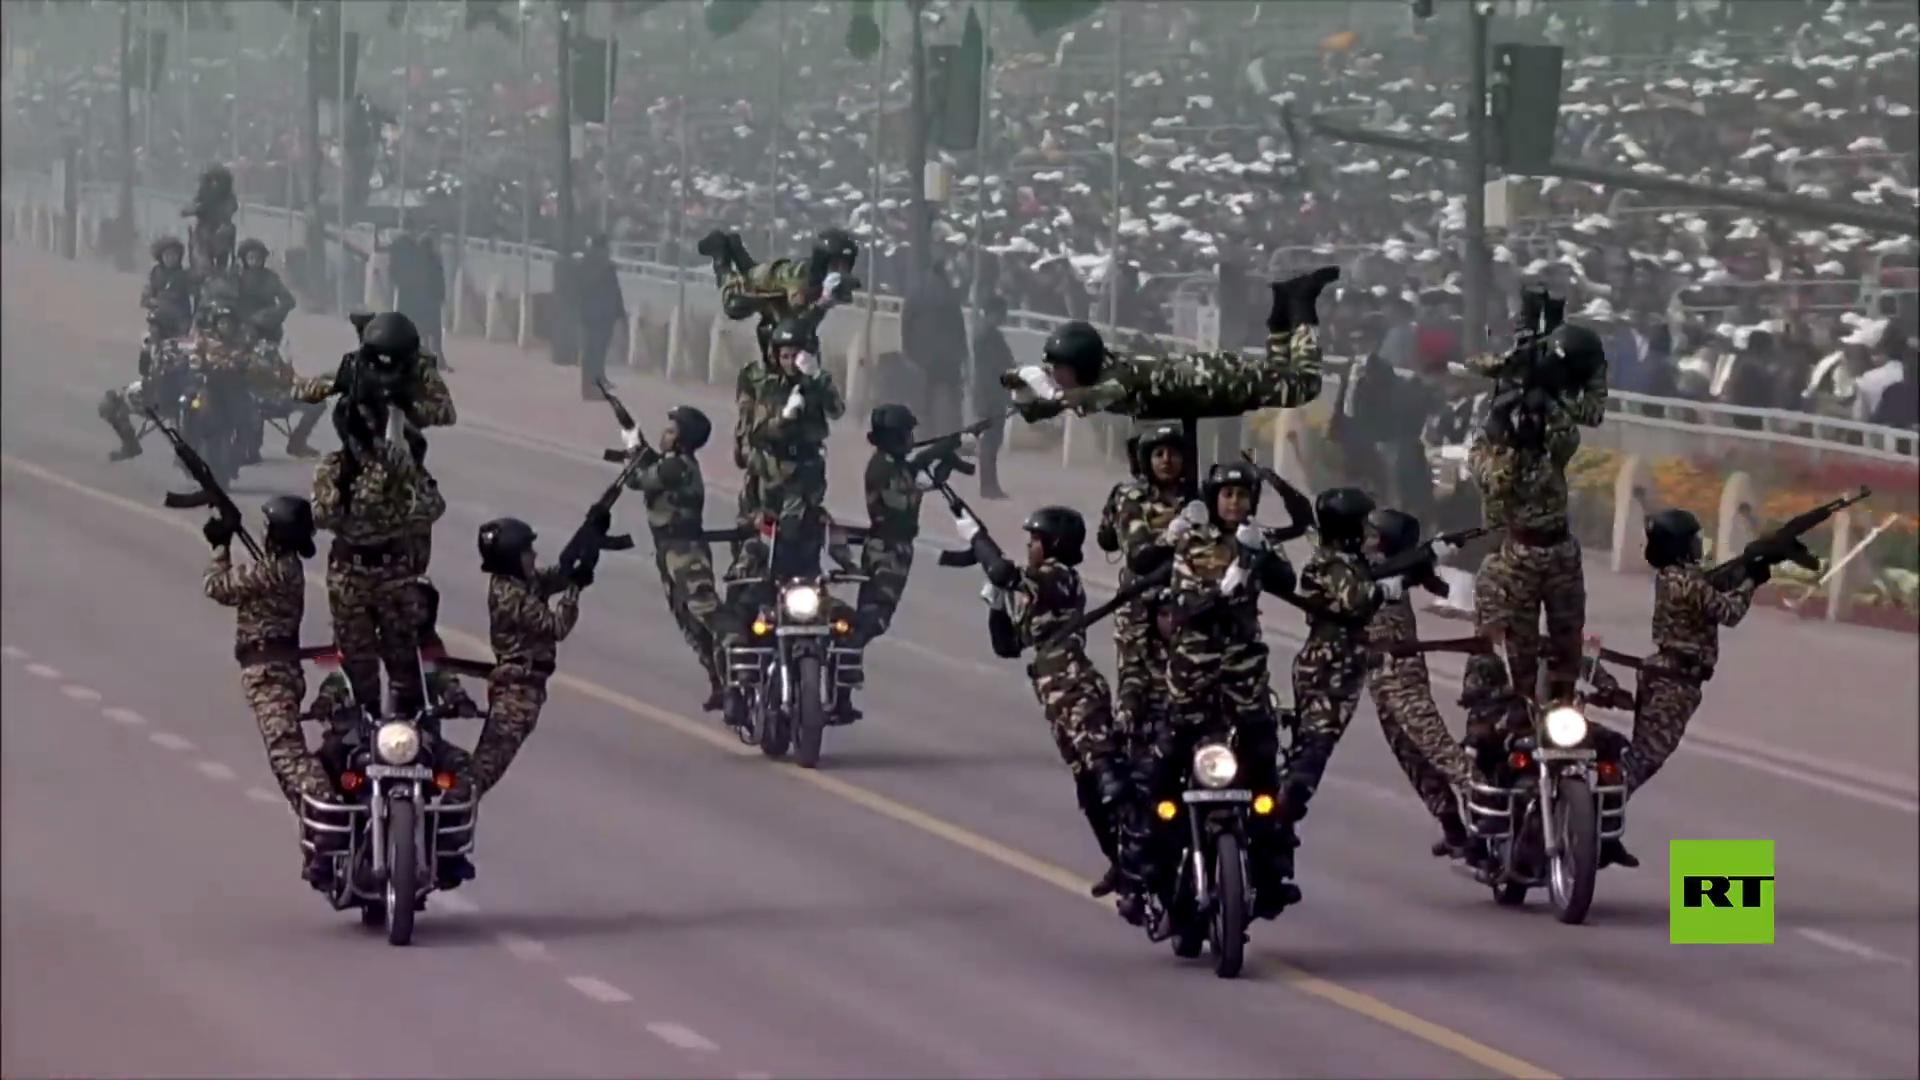 لقطات من عرض عسكري في الهند بمناسبة عيد الجمهورية